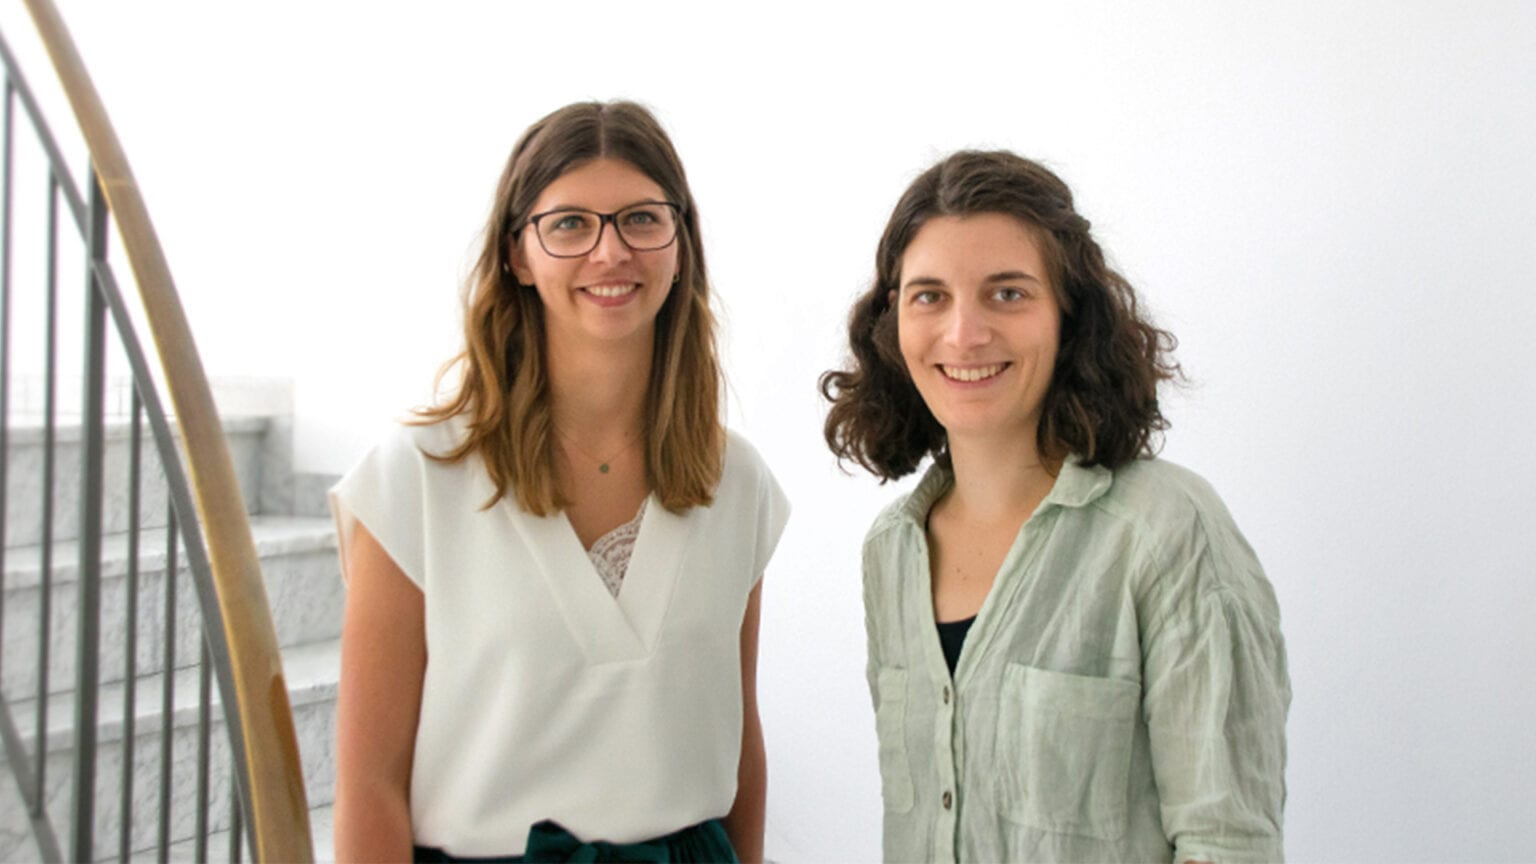 Andrea und Svenja, zwei neue PR-Managerinnen für kiecom